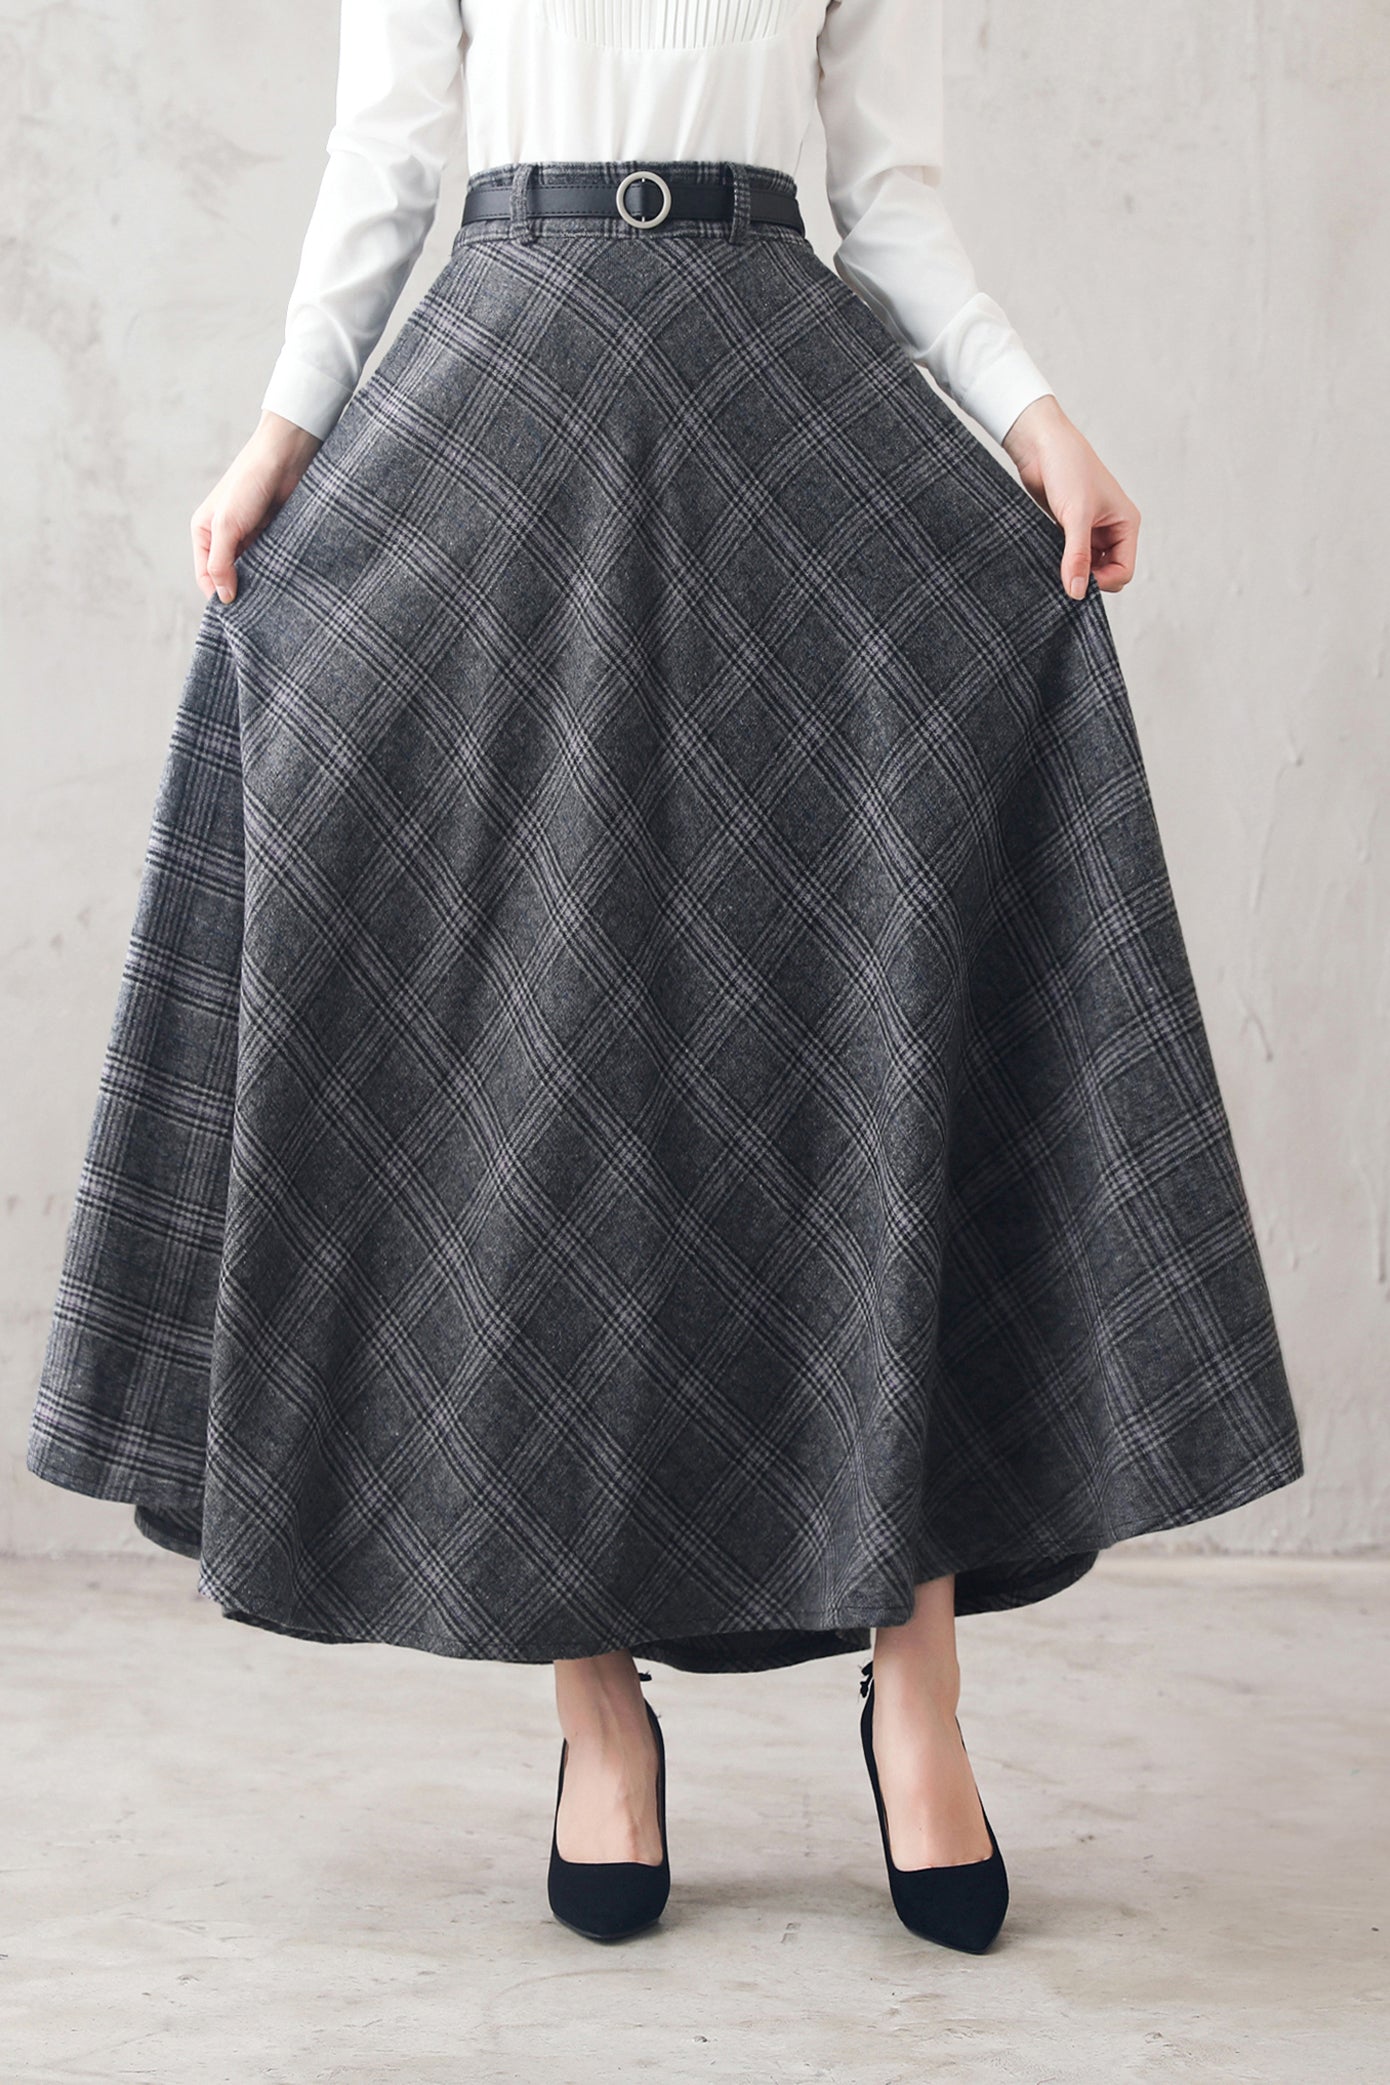 Retro Women's Causal Plaid Woolen Winter Skirt 3106